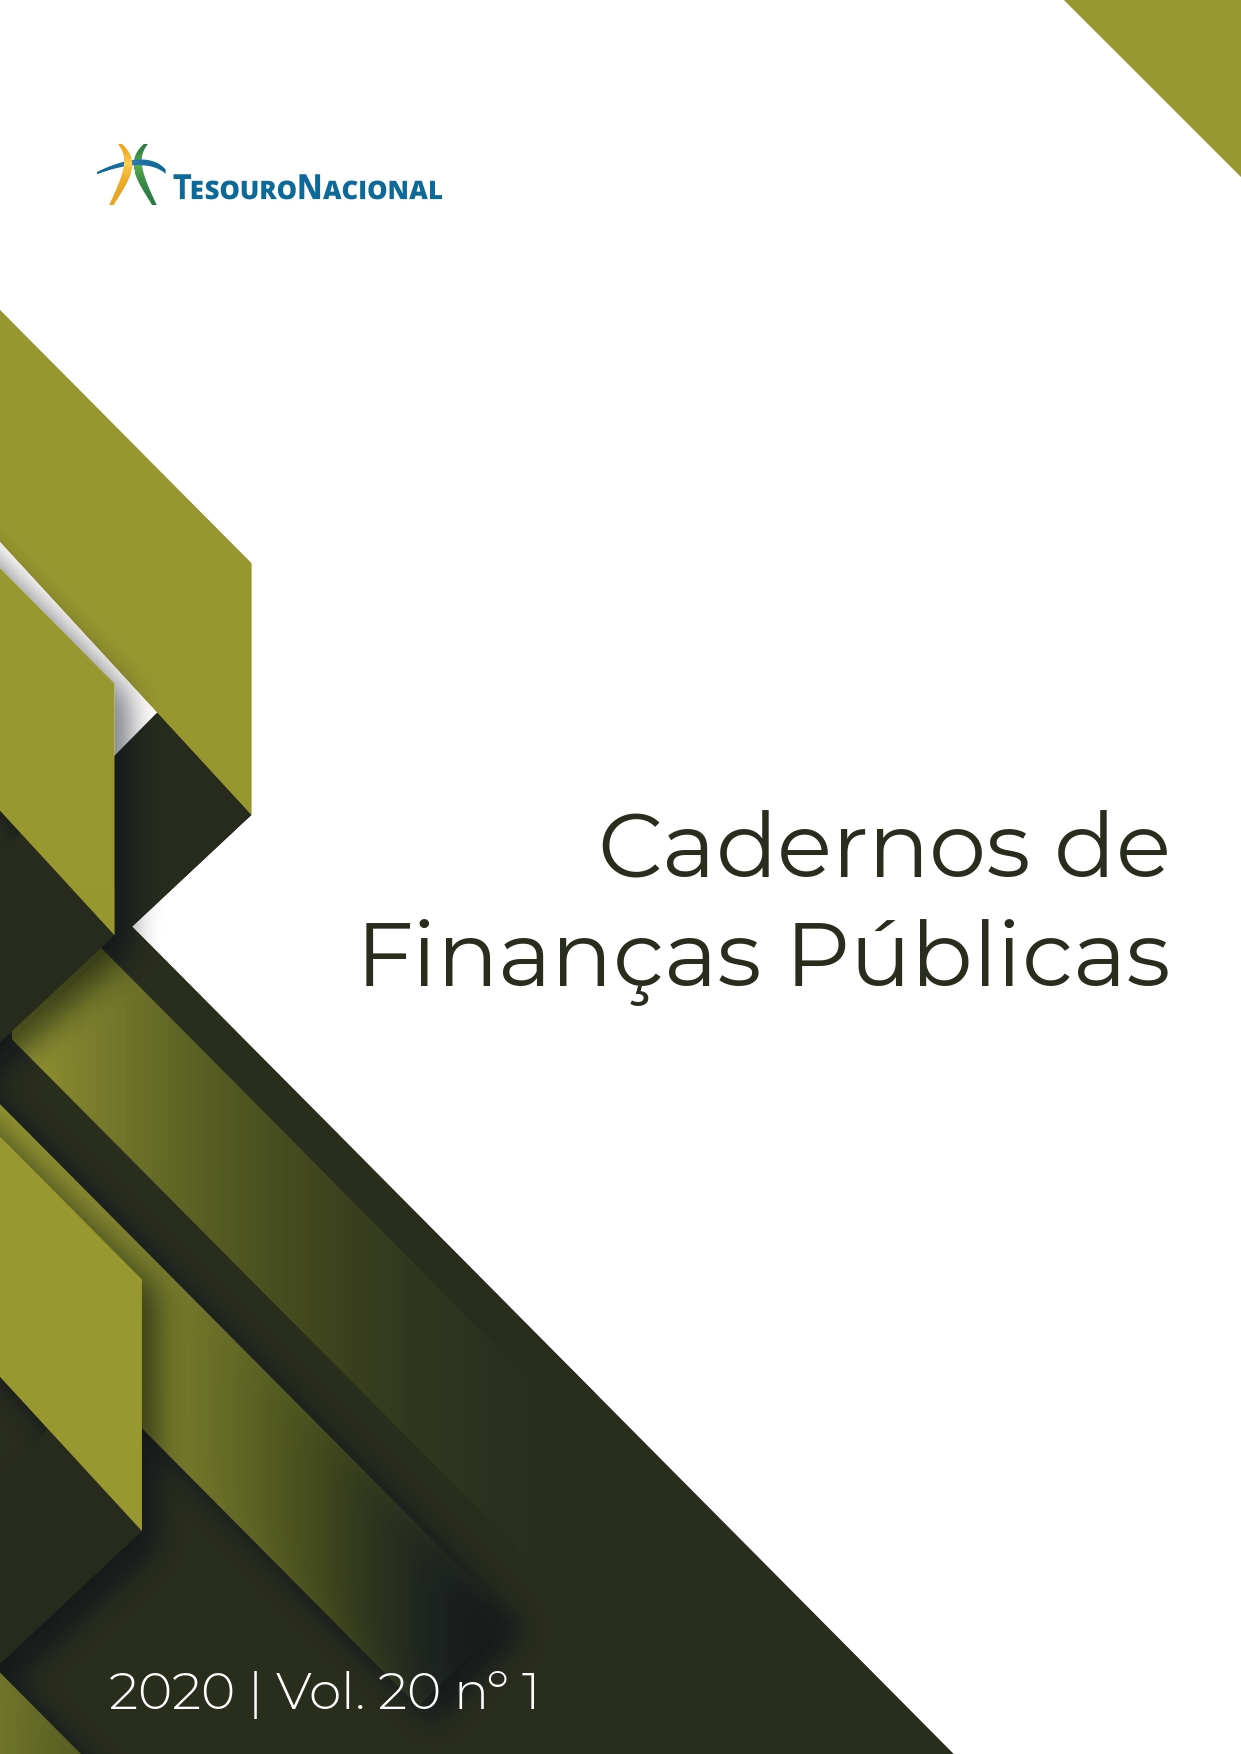 					Visualizar v. 20 n. 01 (2020): CADERNOS DE FINANÇAS PÚBLICAS
				